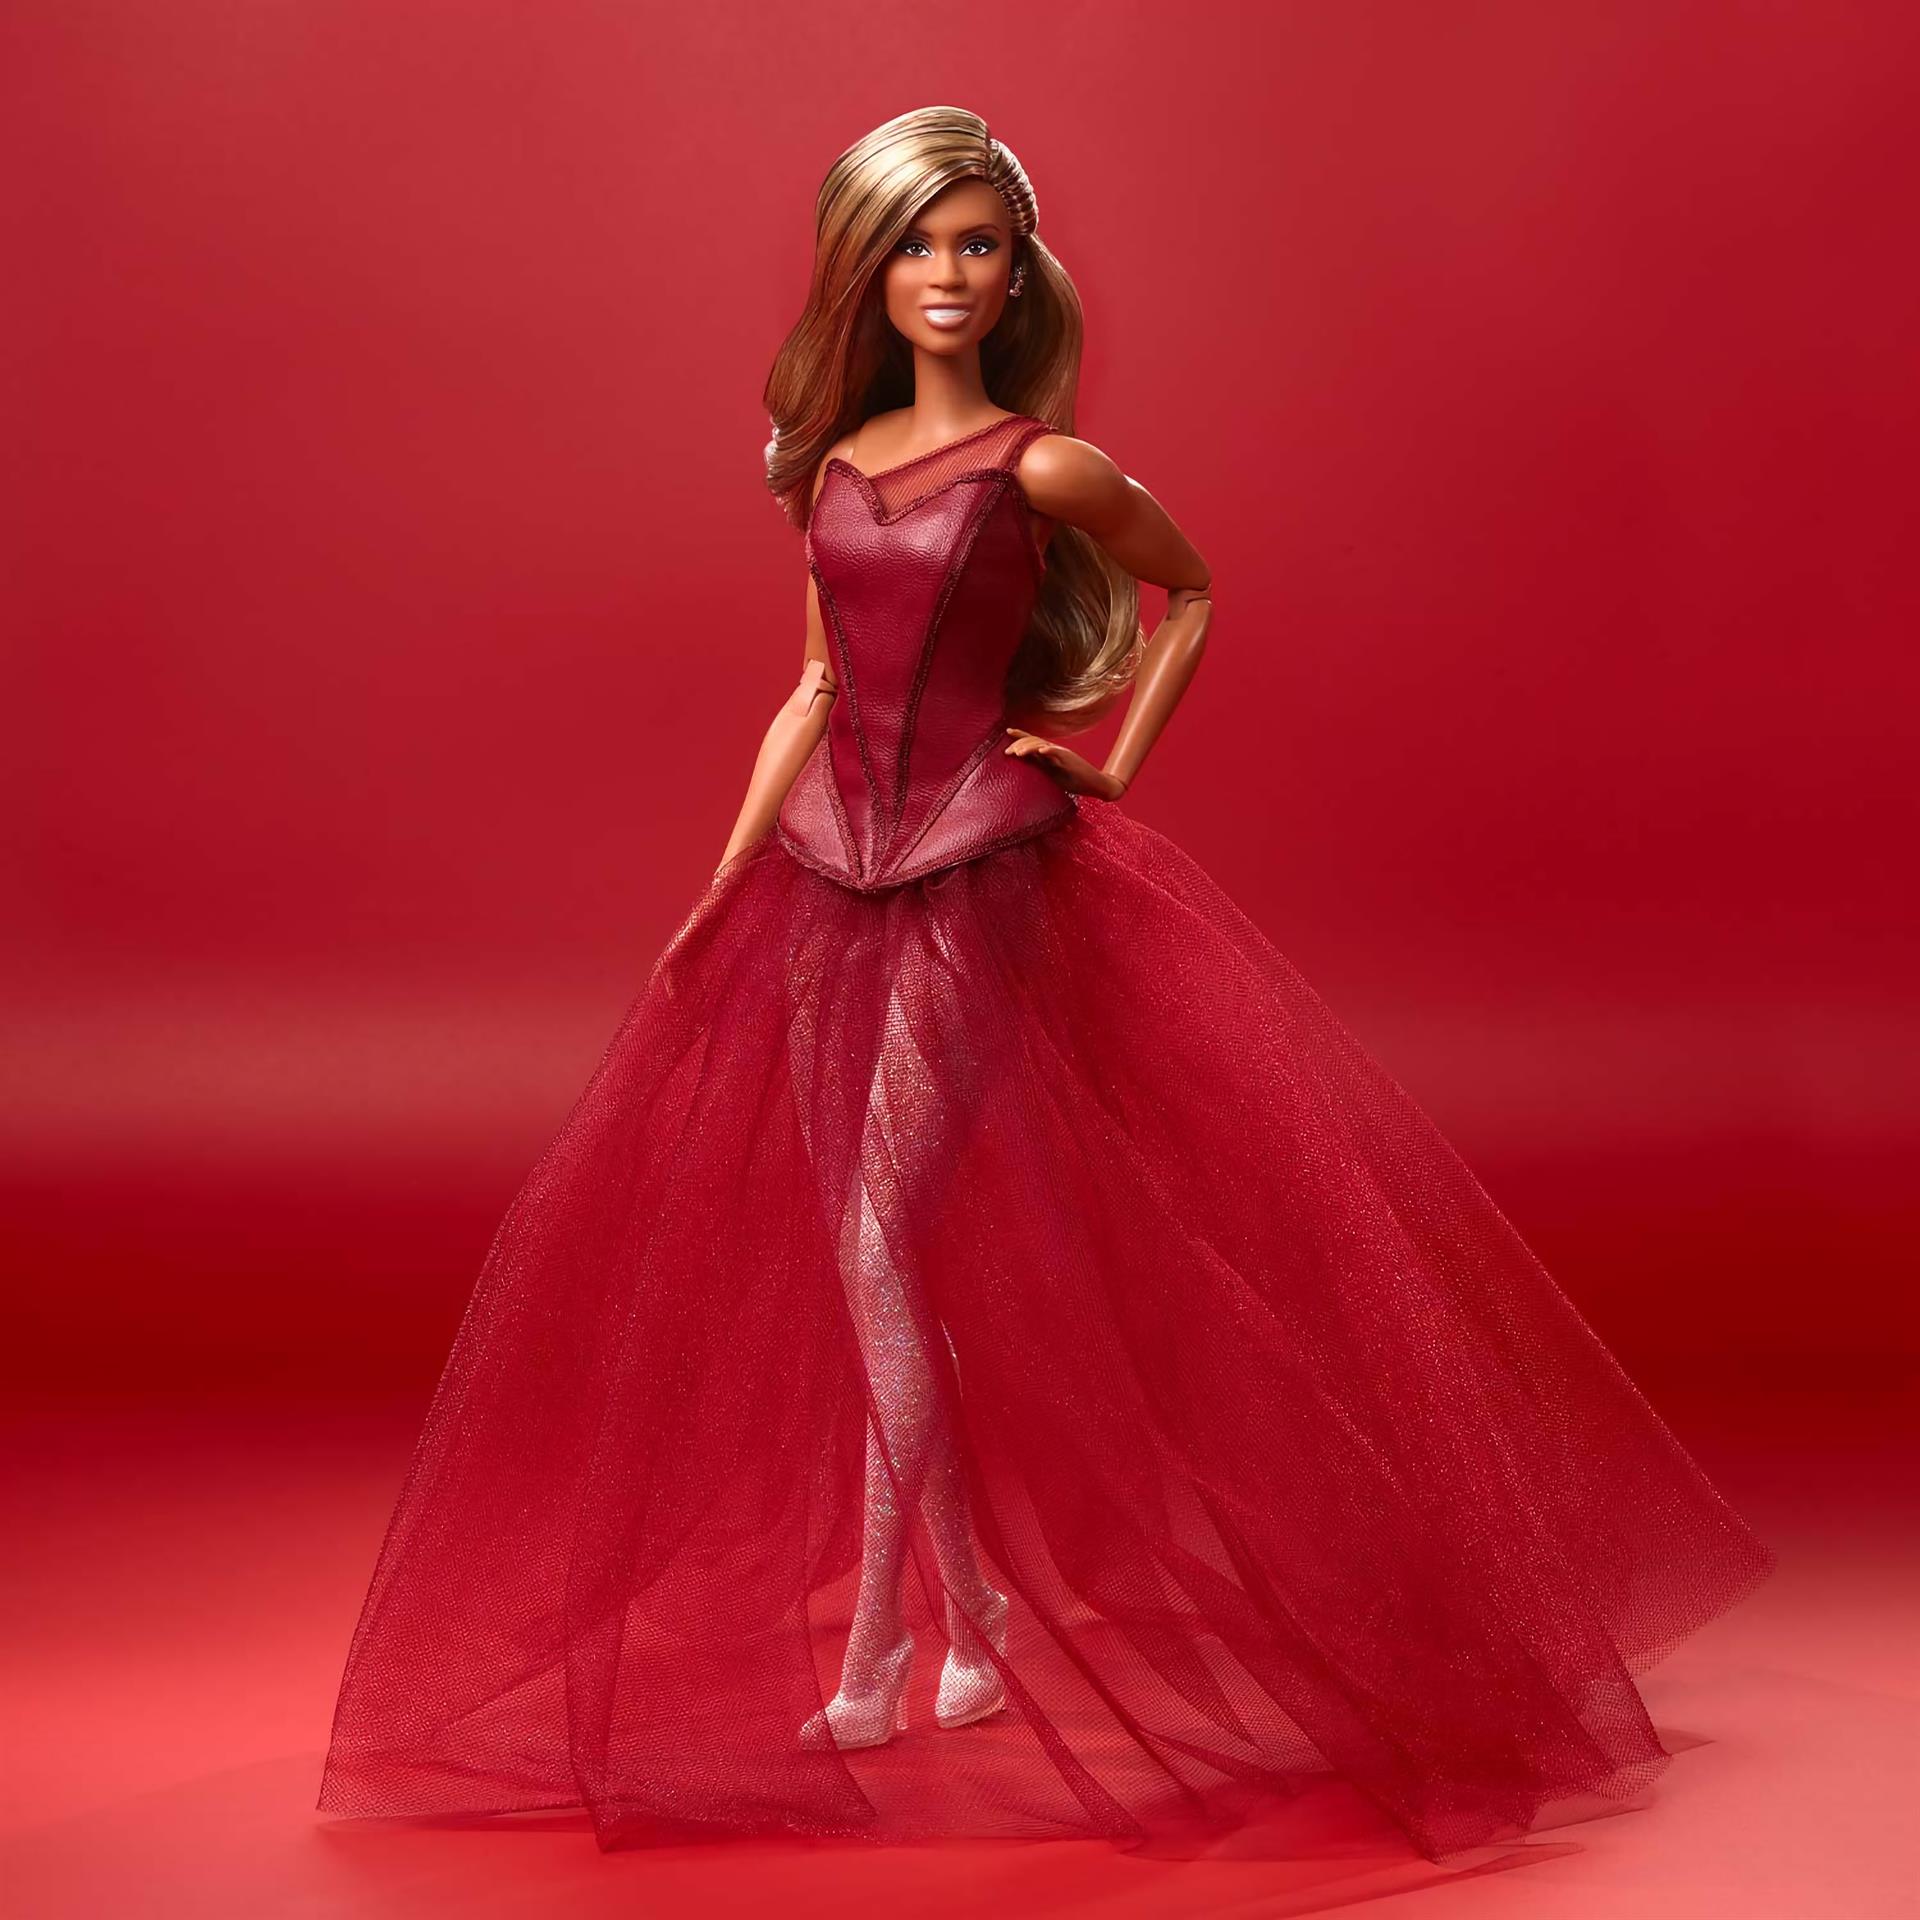 Fotografía cedida hoy por Mattel que muestra a la Barbie que rinde homenaje a la actriz Laverne Cox, la primera inspirada en una persona transexual de esta exitosa colección de muñecas, que cumplió 60 años en 2019. EFE/Mattel /SOLO USO EDITORIAL /NO VENTAS /SOLO DISPONIBLE PARA ILUSTRAR LA NOTICIA QUE ACOMPAÑA /CRÉDITO OBLIGATORIO
